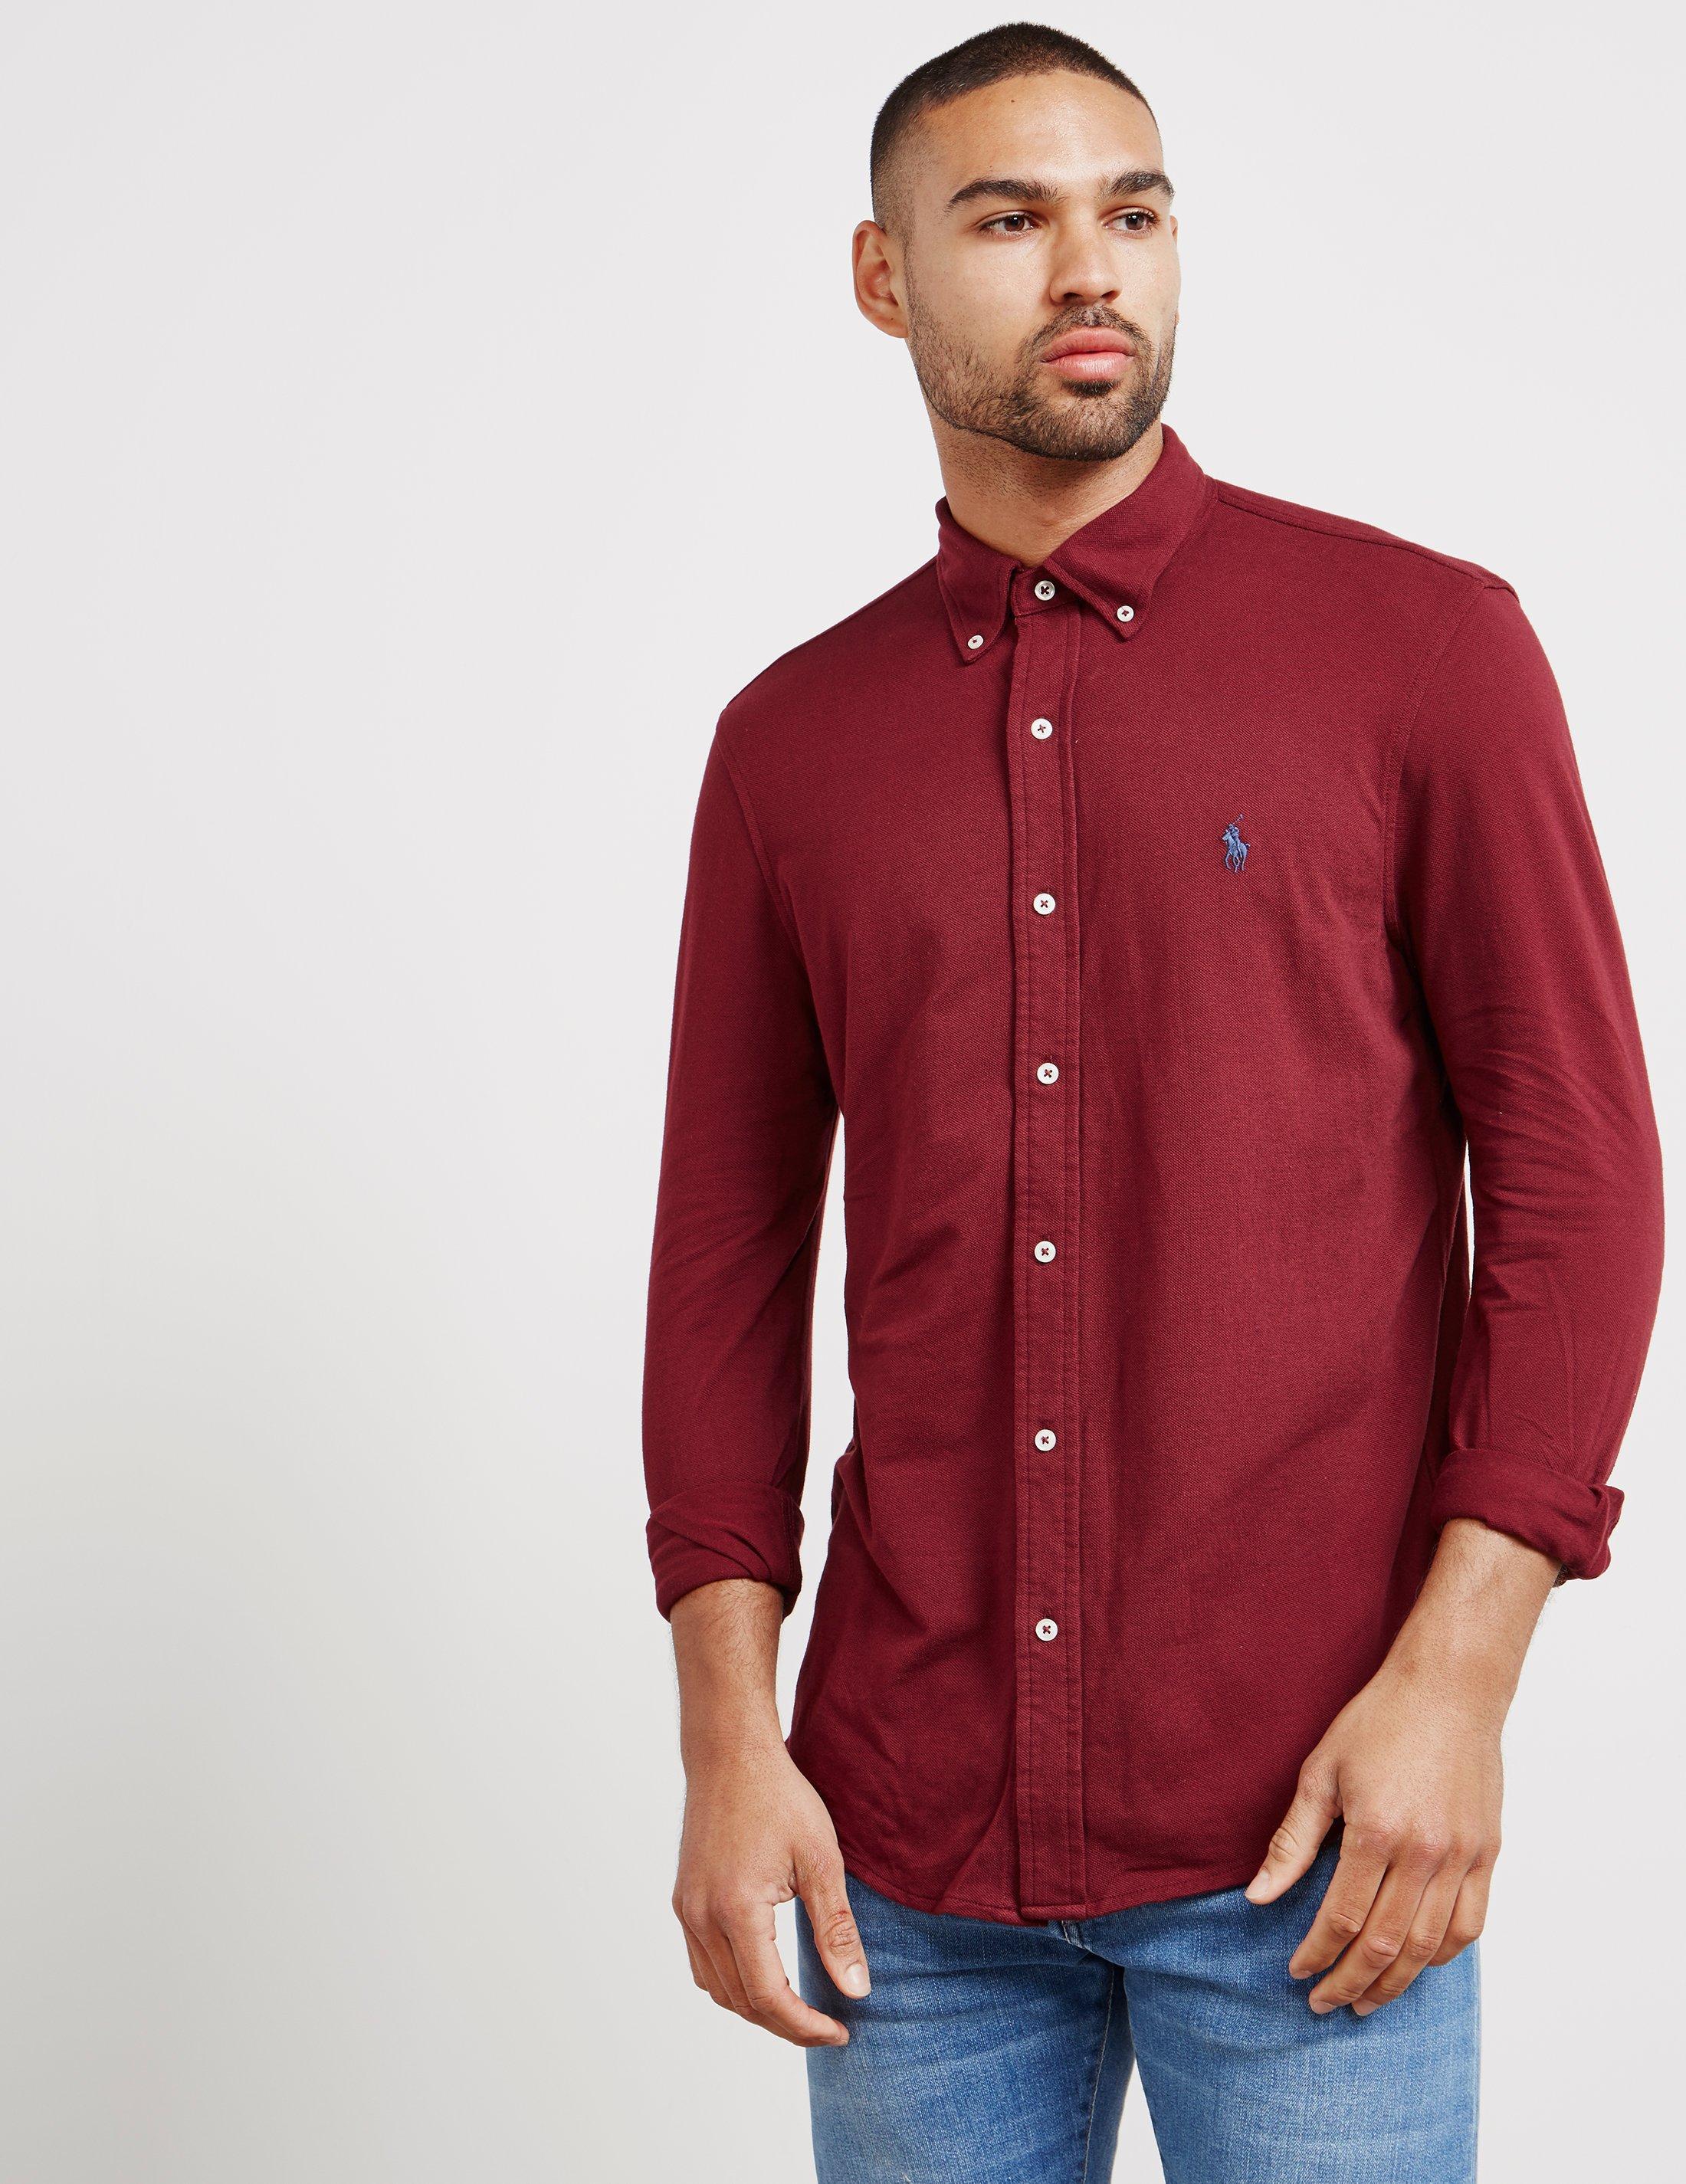 burgundy ralph lauren shirt mens Shop 